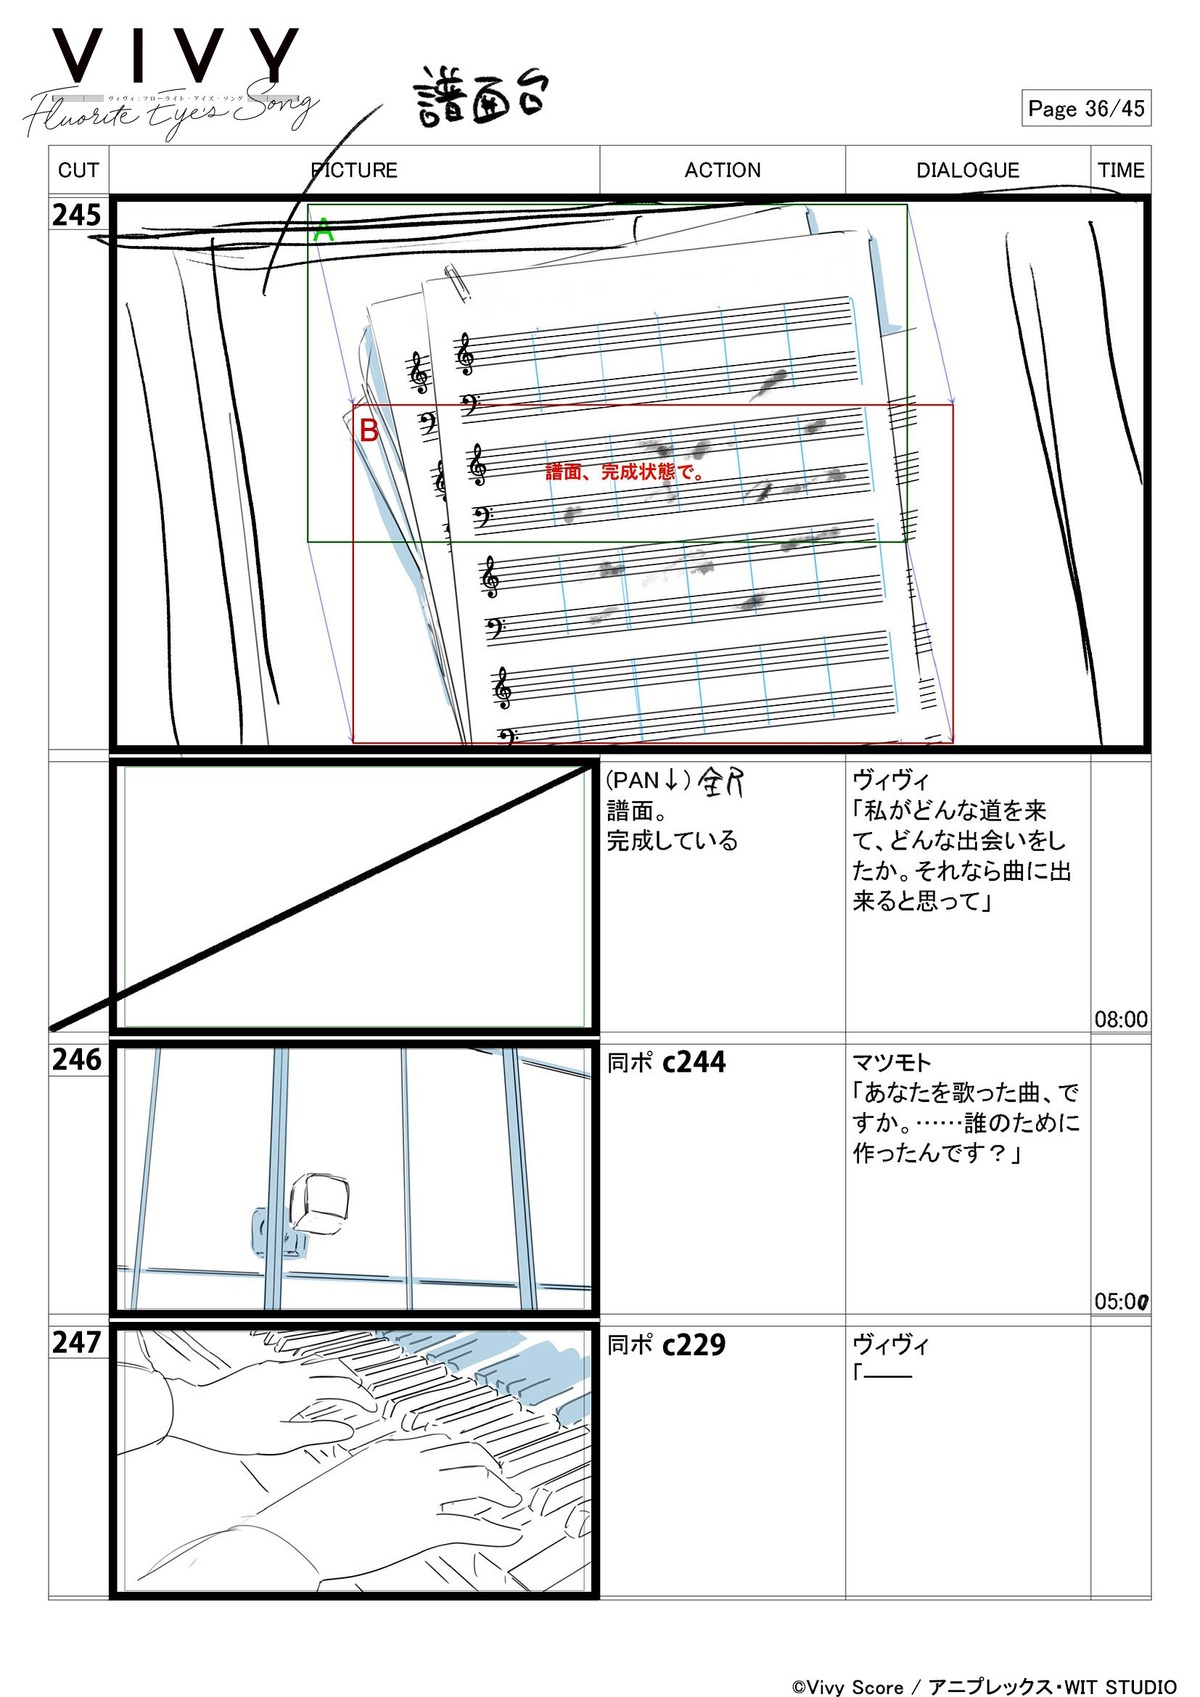 production_materials storyboard takashi_kawabata vivy_-_fluorite_eye'_s_song